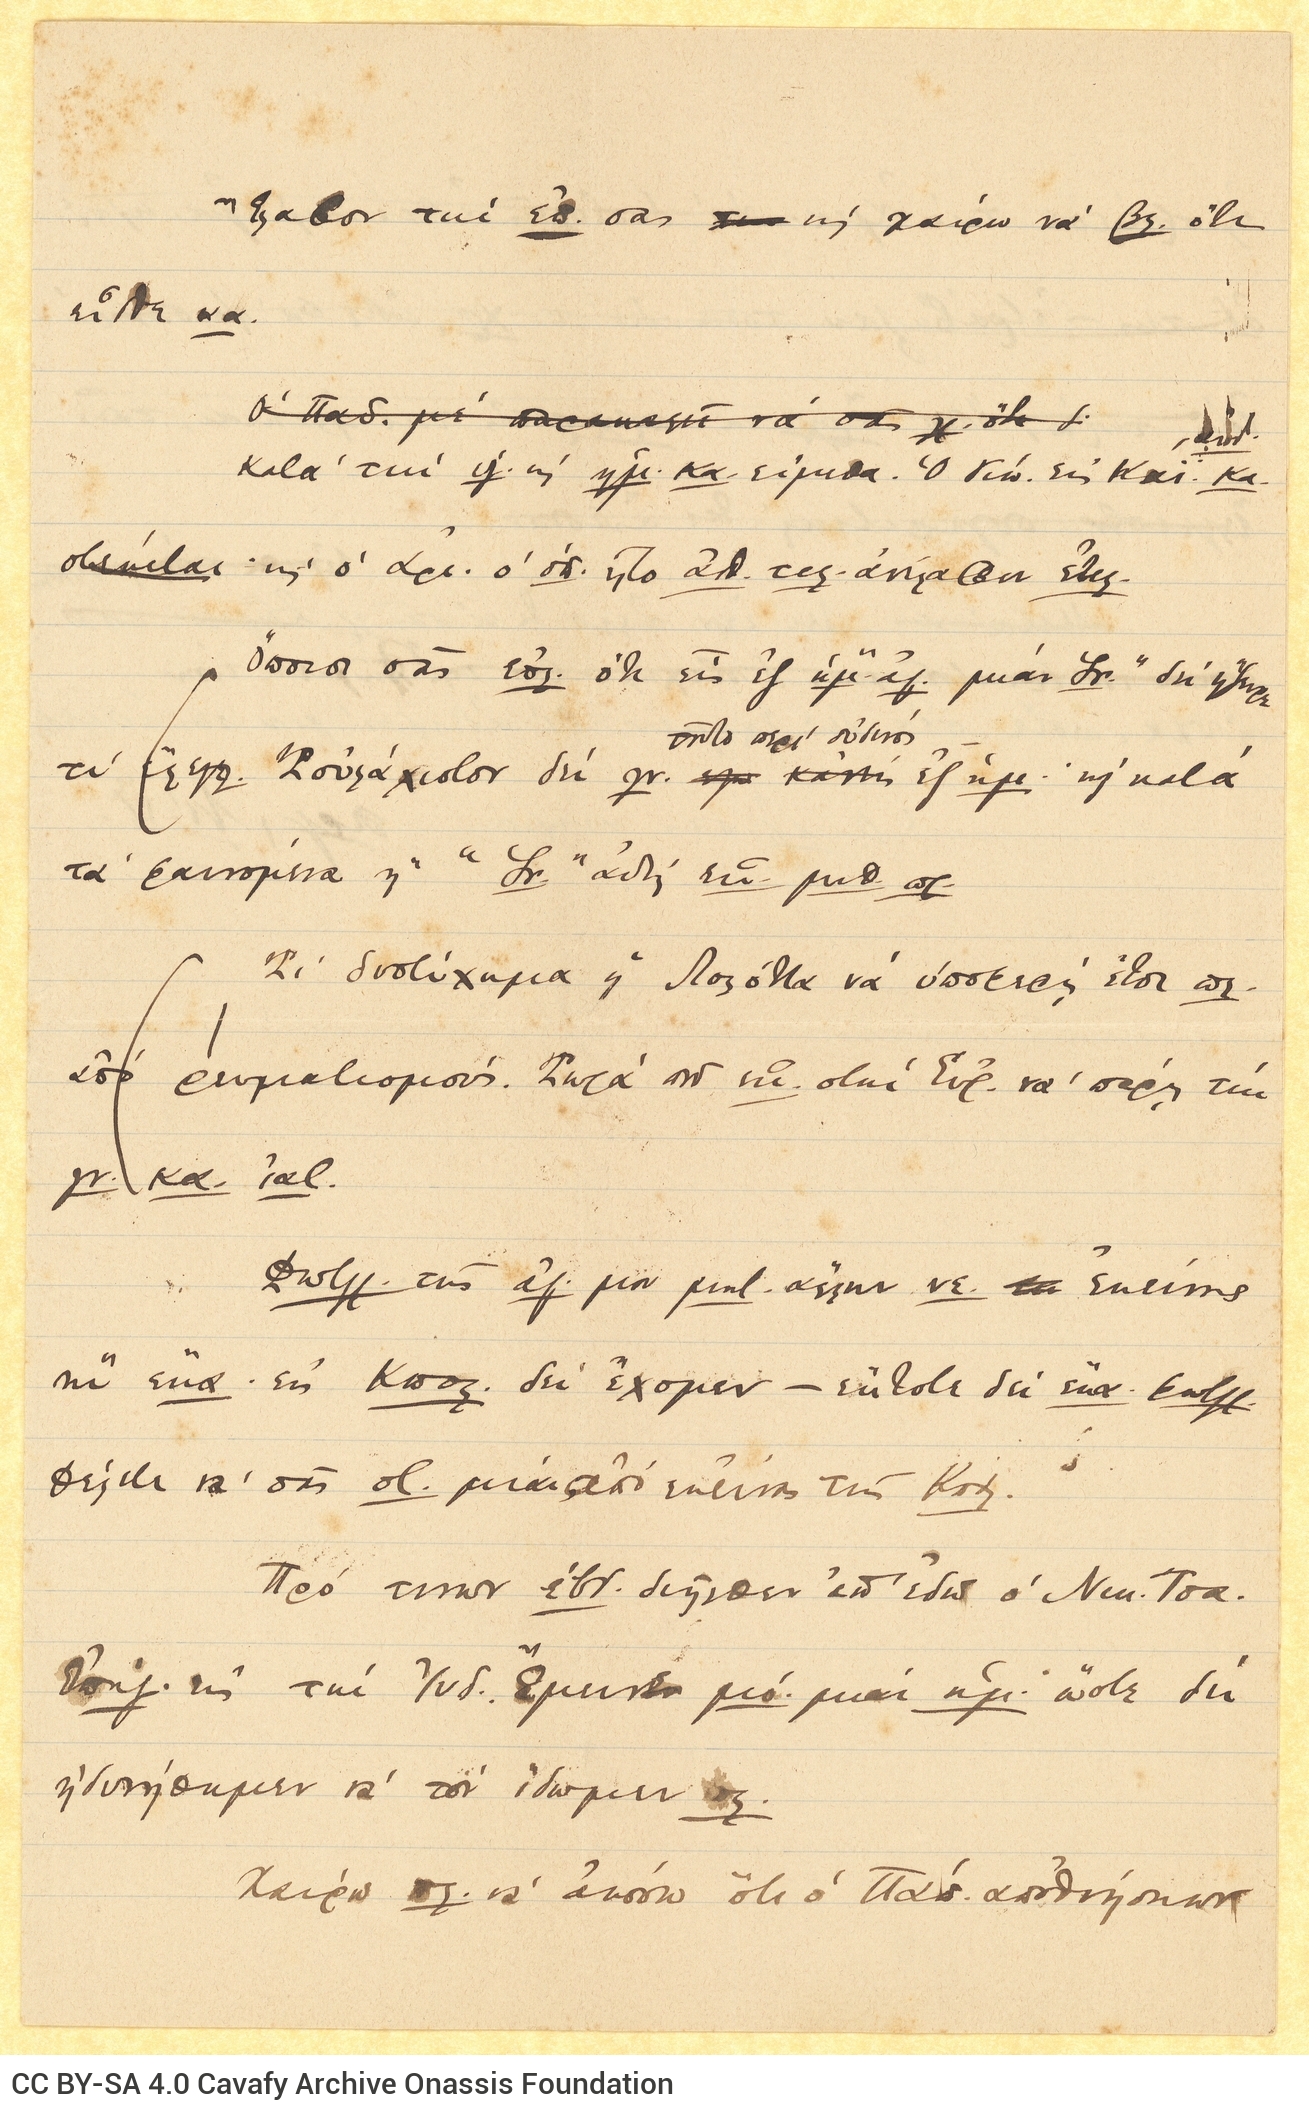 Χειρόγραφο σχέδιο επιστολής του Καβάφη προς την αδελφή της μητέρας �